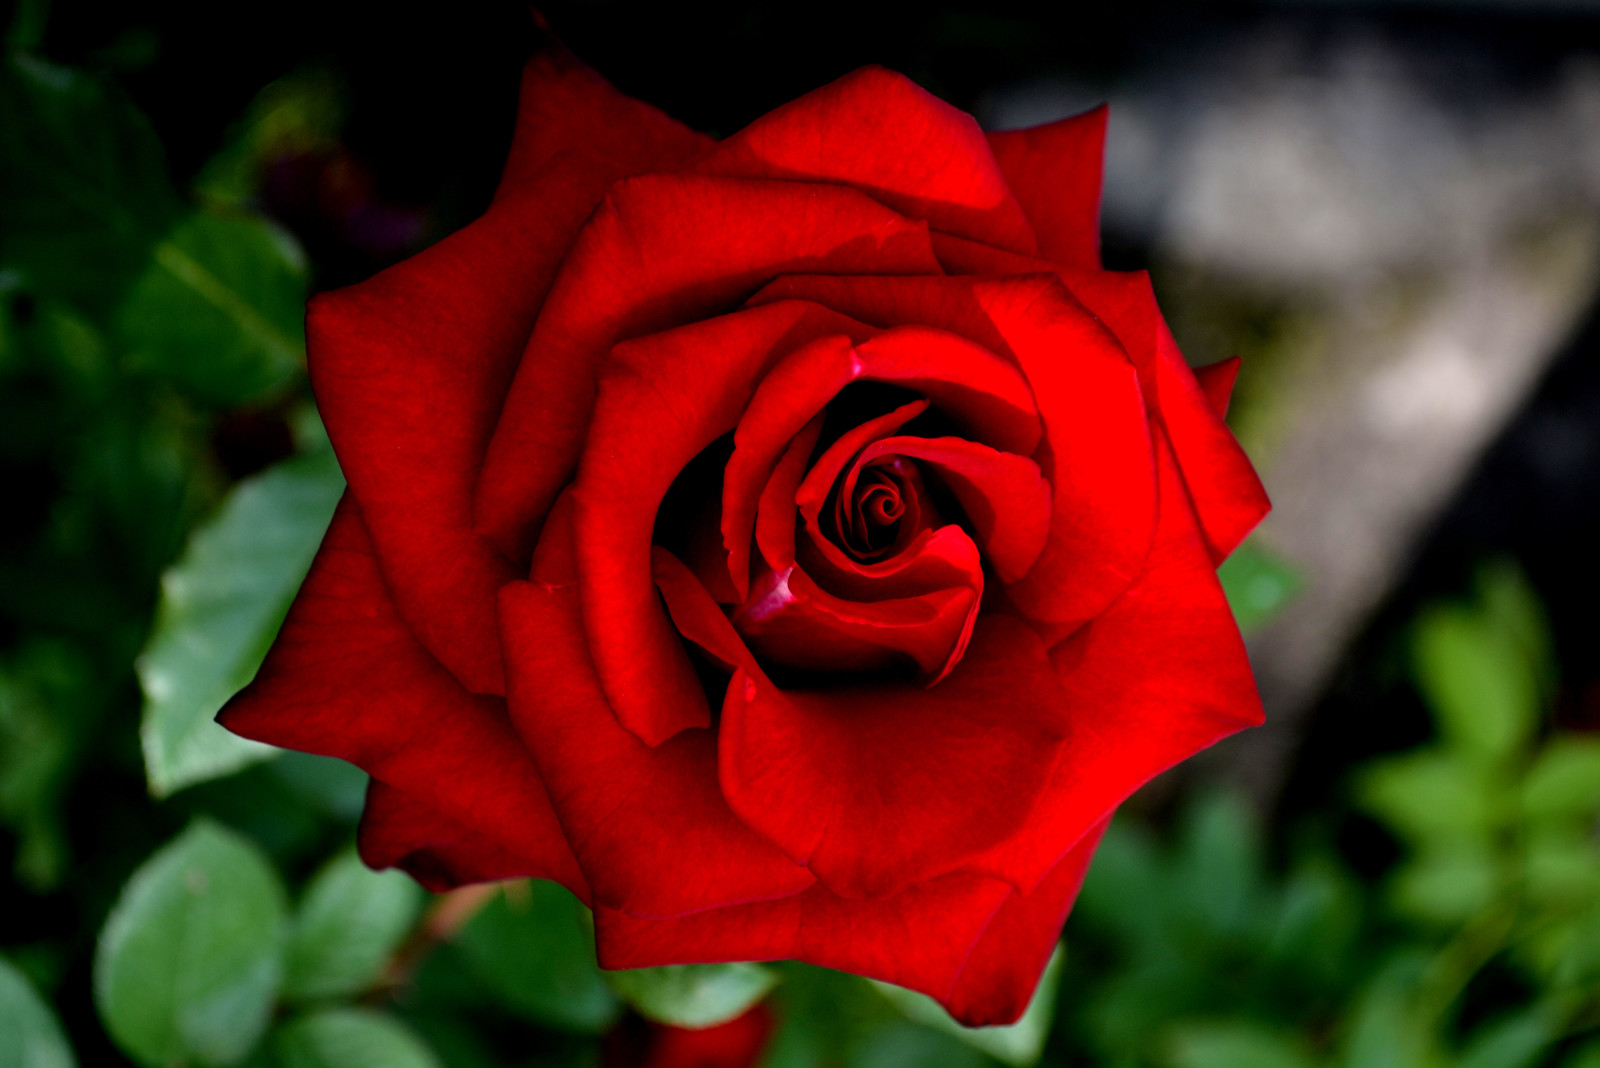 Hoa hồng, một bông hồng đỏ